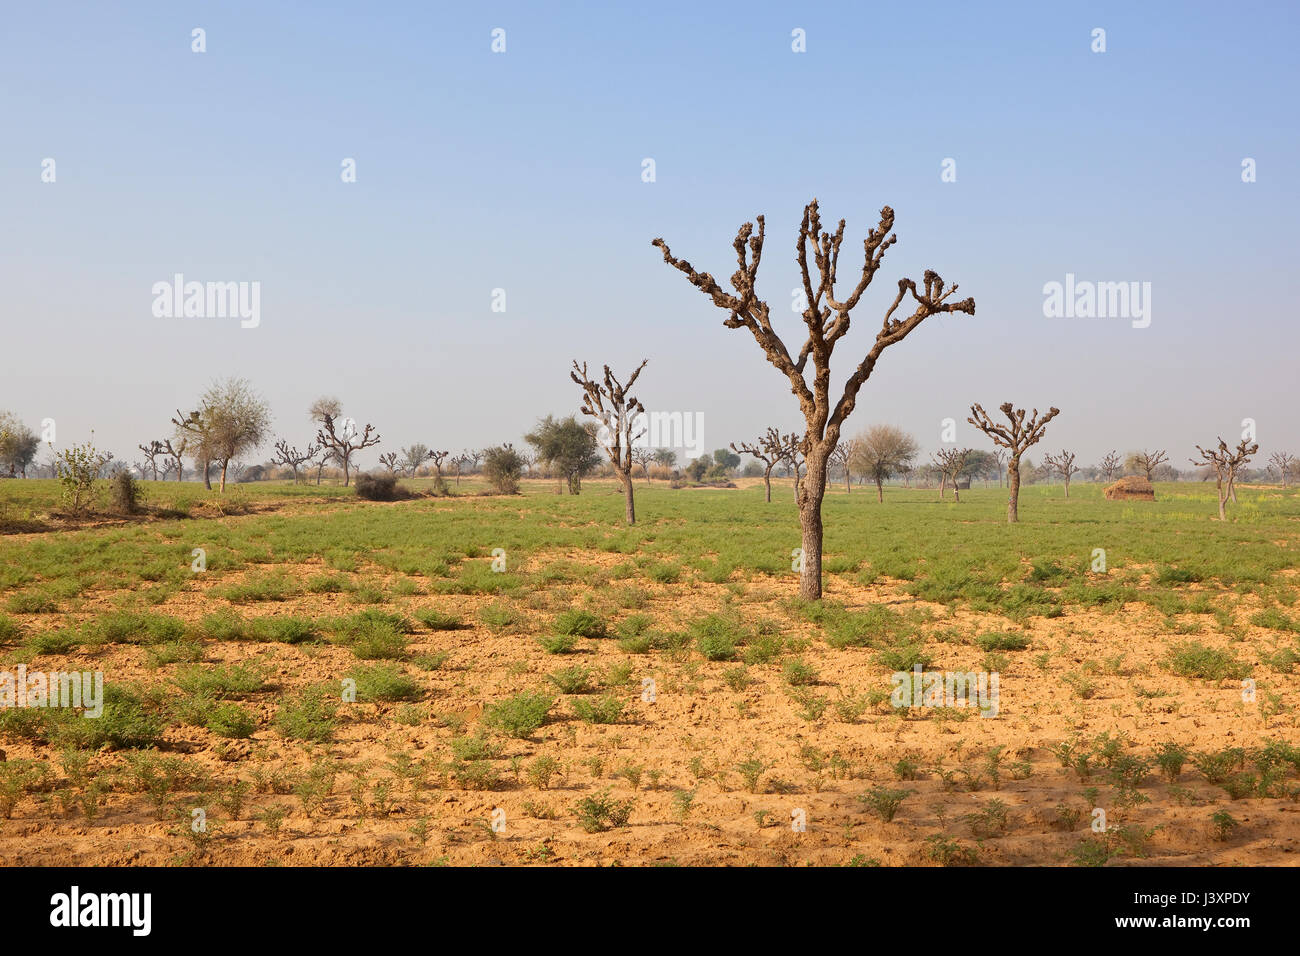 Eine trockene Rajasthan Landschaft mit gekappte Bäume und Küken-Erbse-Ernte auf sandigem Boden unter einem strahlend blauen Himmel im Frühling Stockfoto